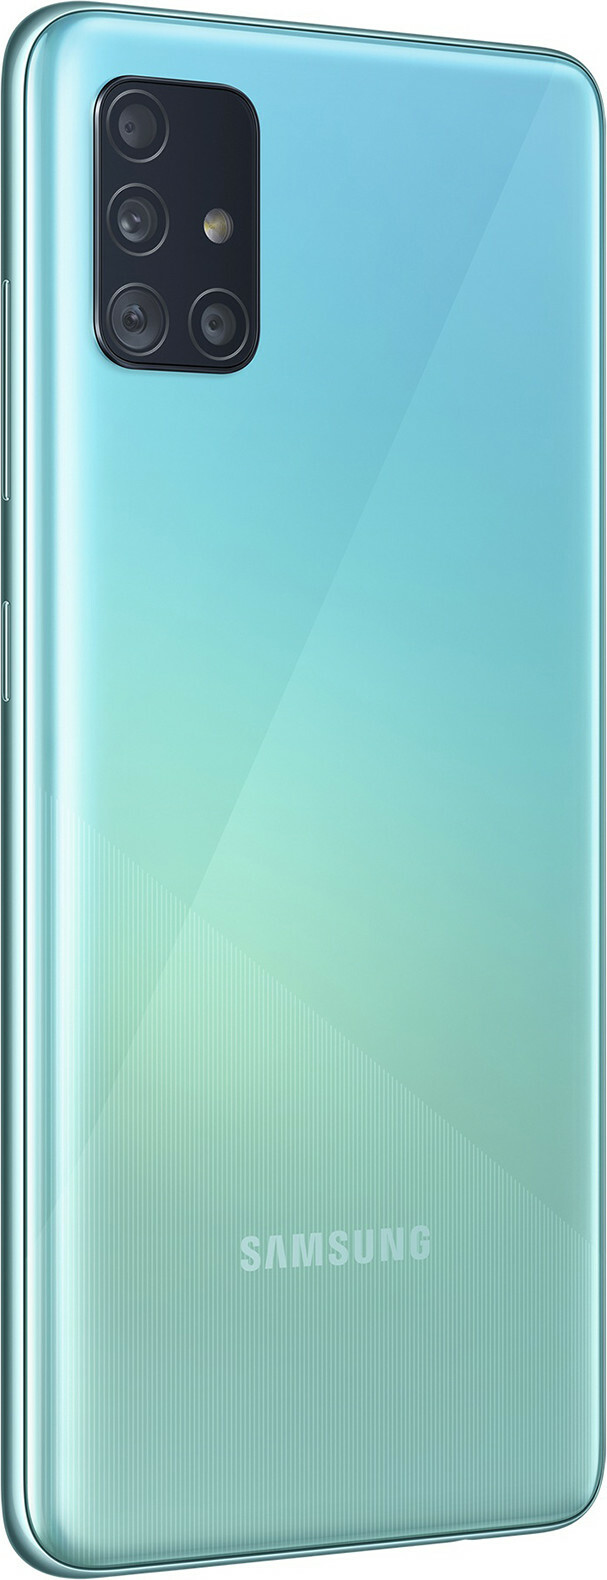 Samsung Galaxy A51 5G 128GB (8GB RAM)